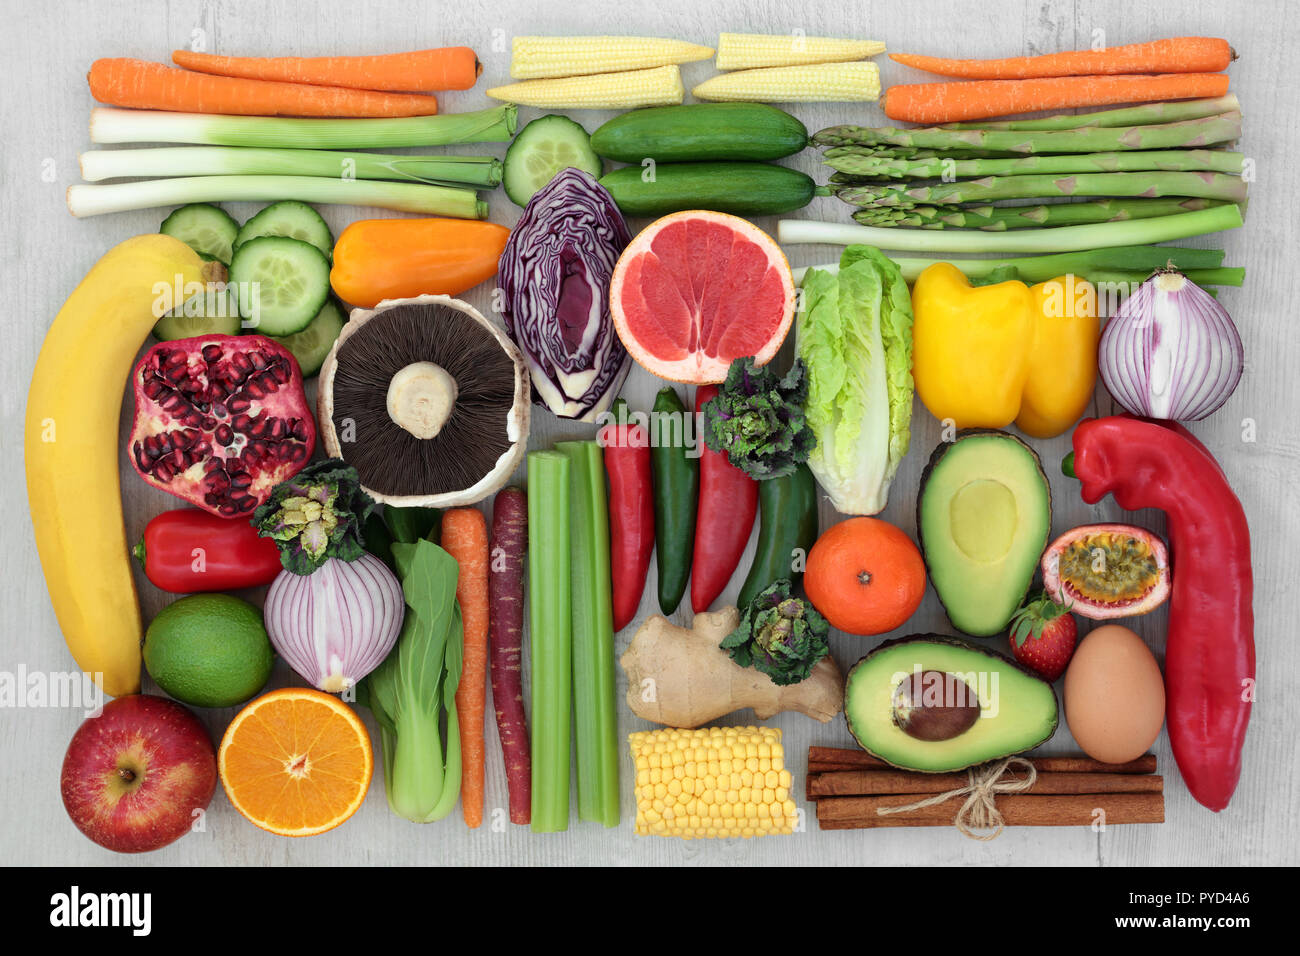 Cibo sano concetto per pulire il mangiare con frutta fresca, spezie e verdure. Gli alimenti ricchi di antiossidanti, antocianine vitamine e fibra dietetica. Foto Stock